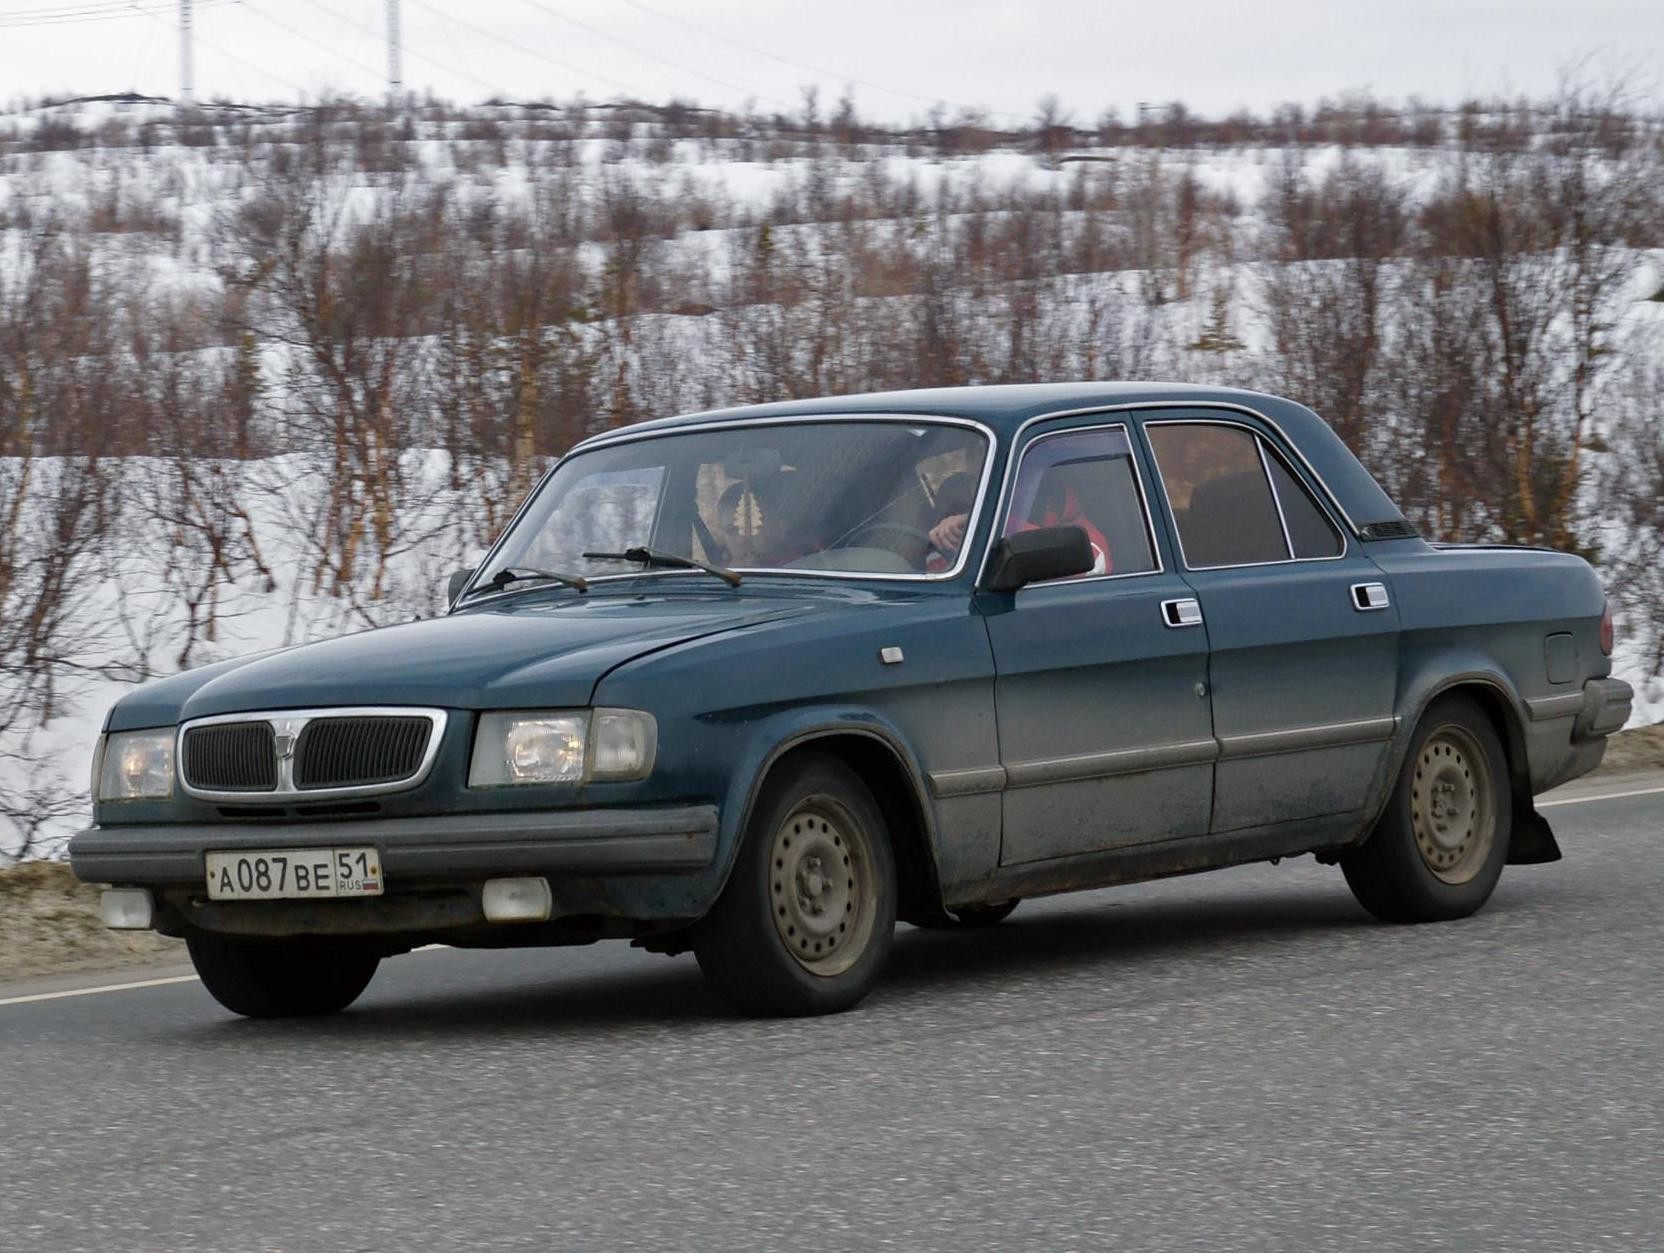 ГАЗ-3110 - комплектации, характеристики, обзор фото Волга ...